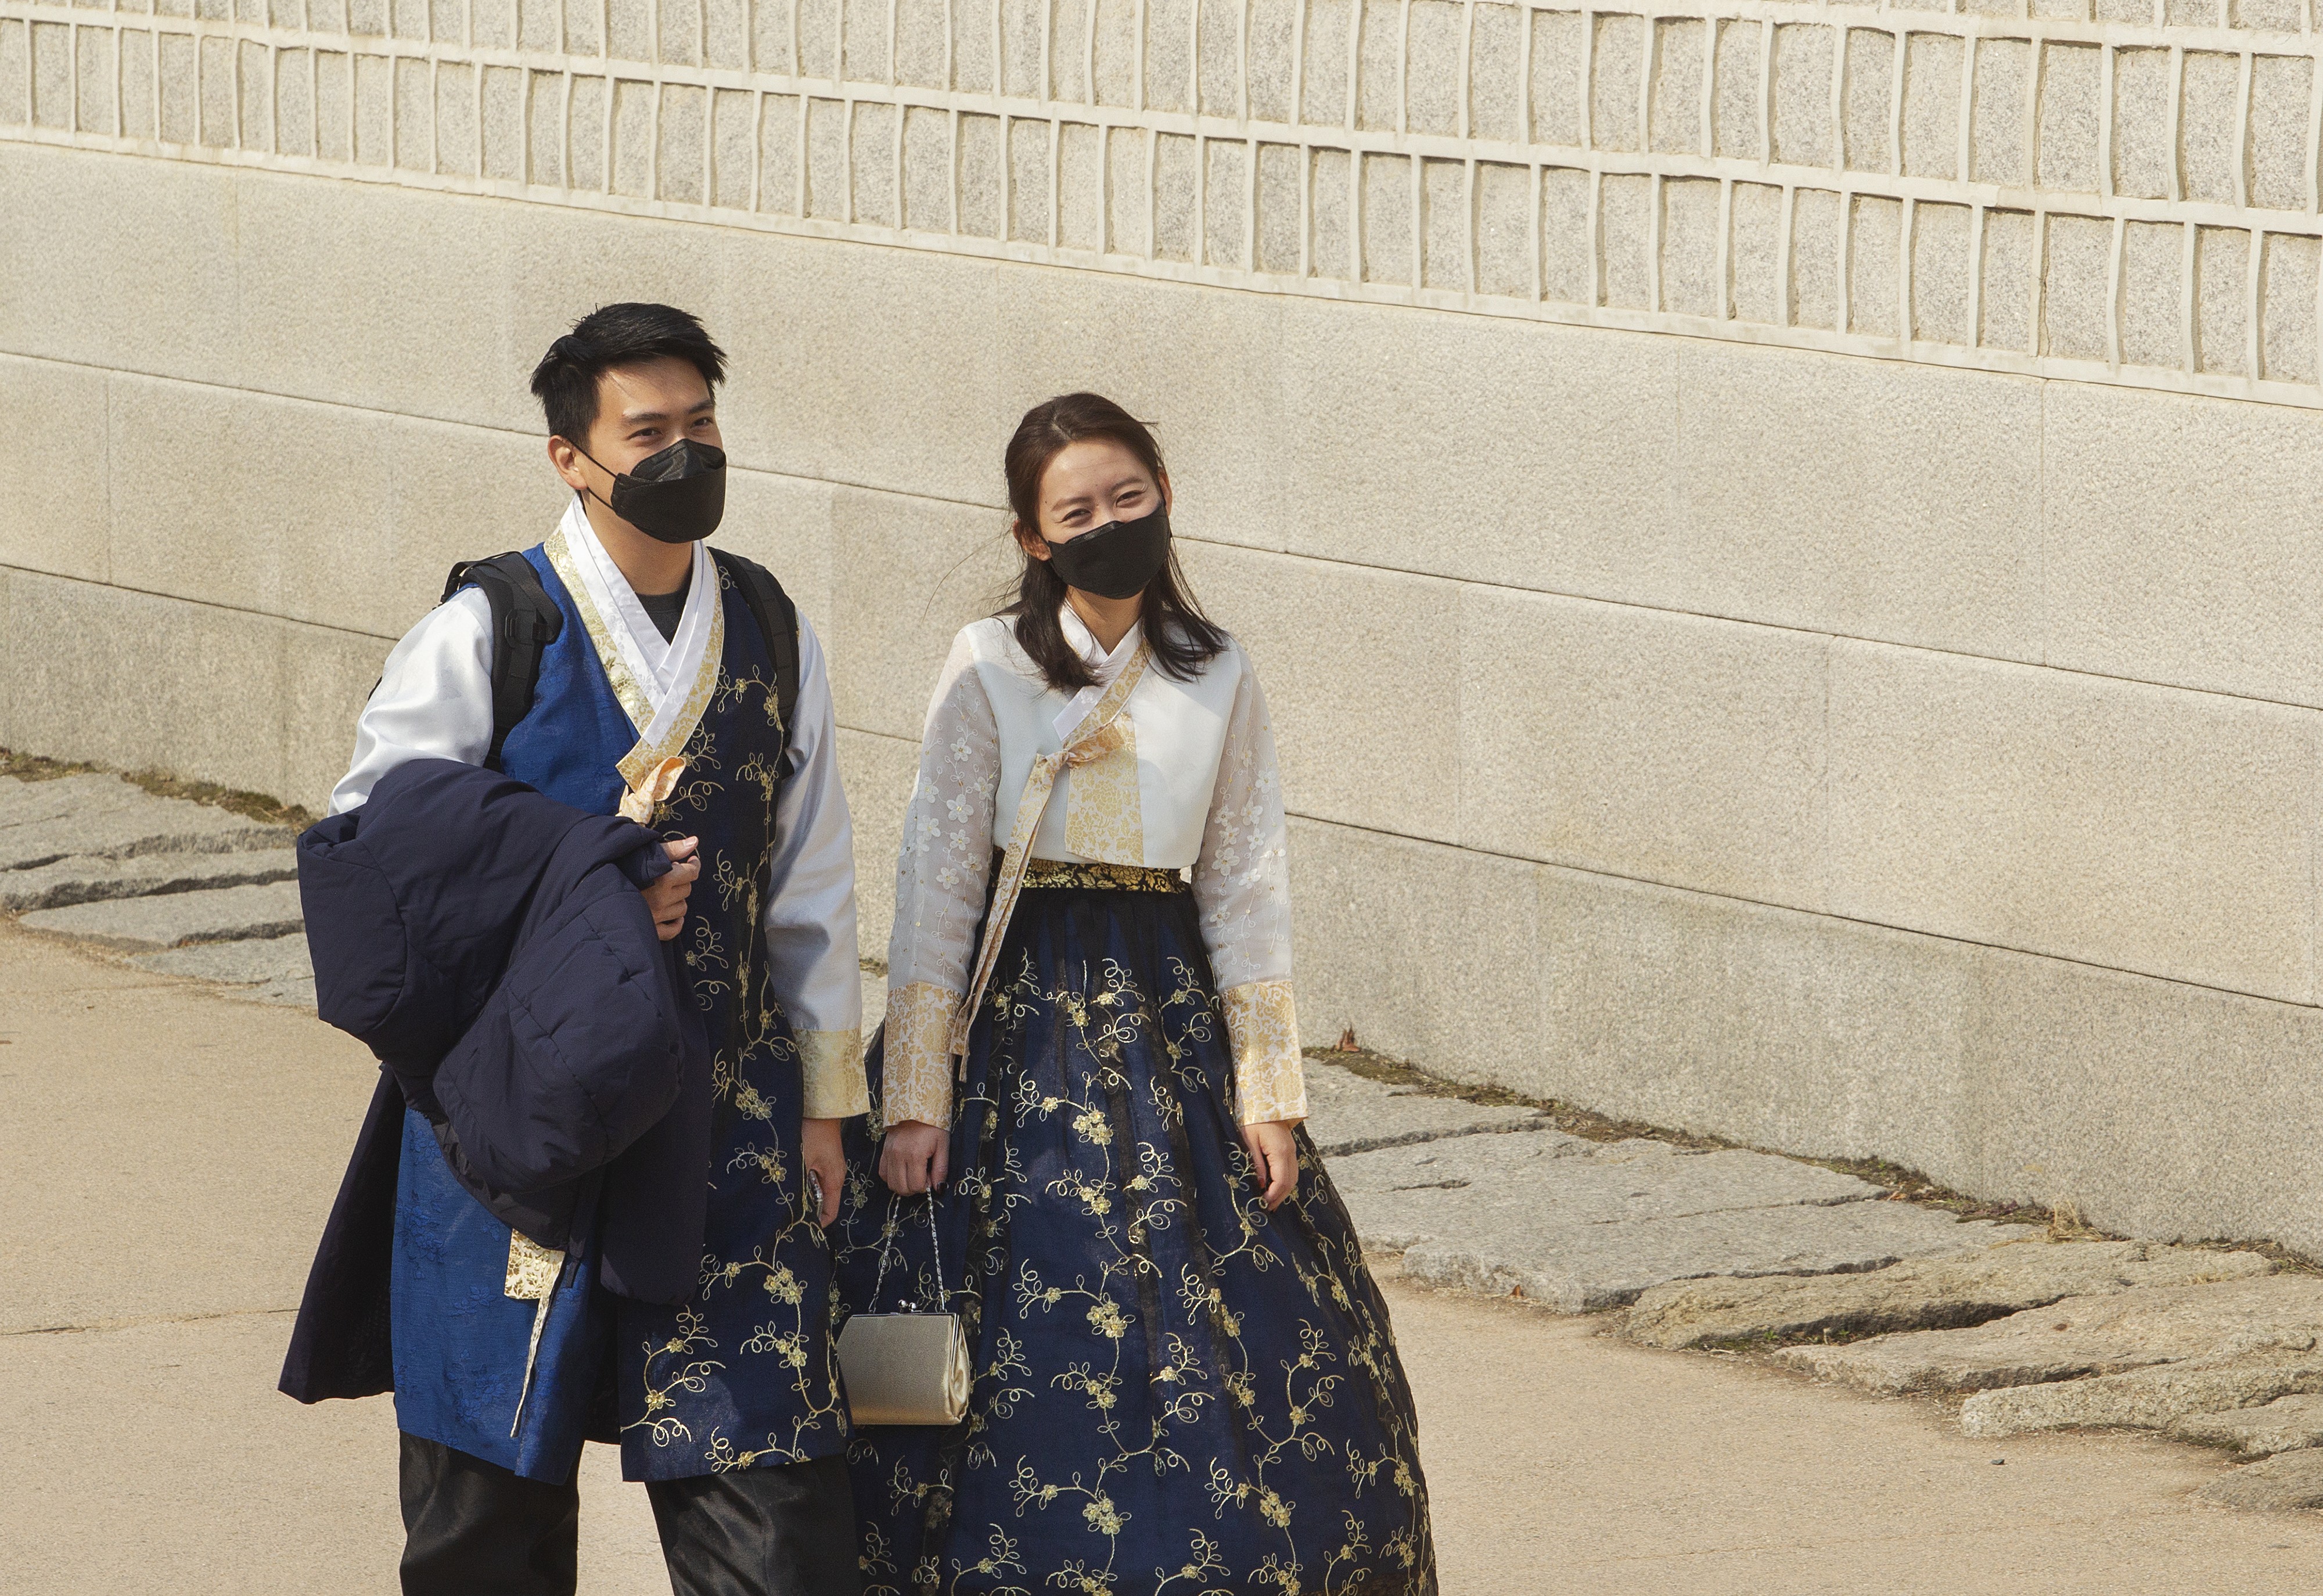 Turistas usando máscaras em 20 de fevereiro de 2020 em Seul, Coréia do Sul (Foto: Getty Images)